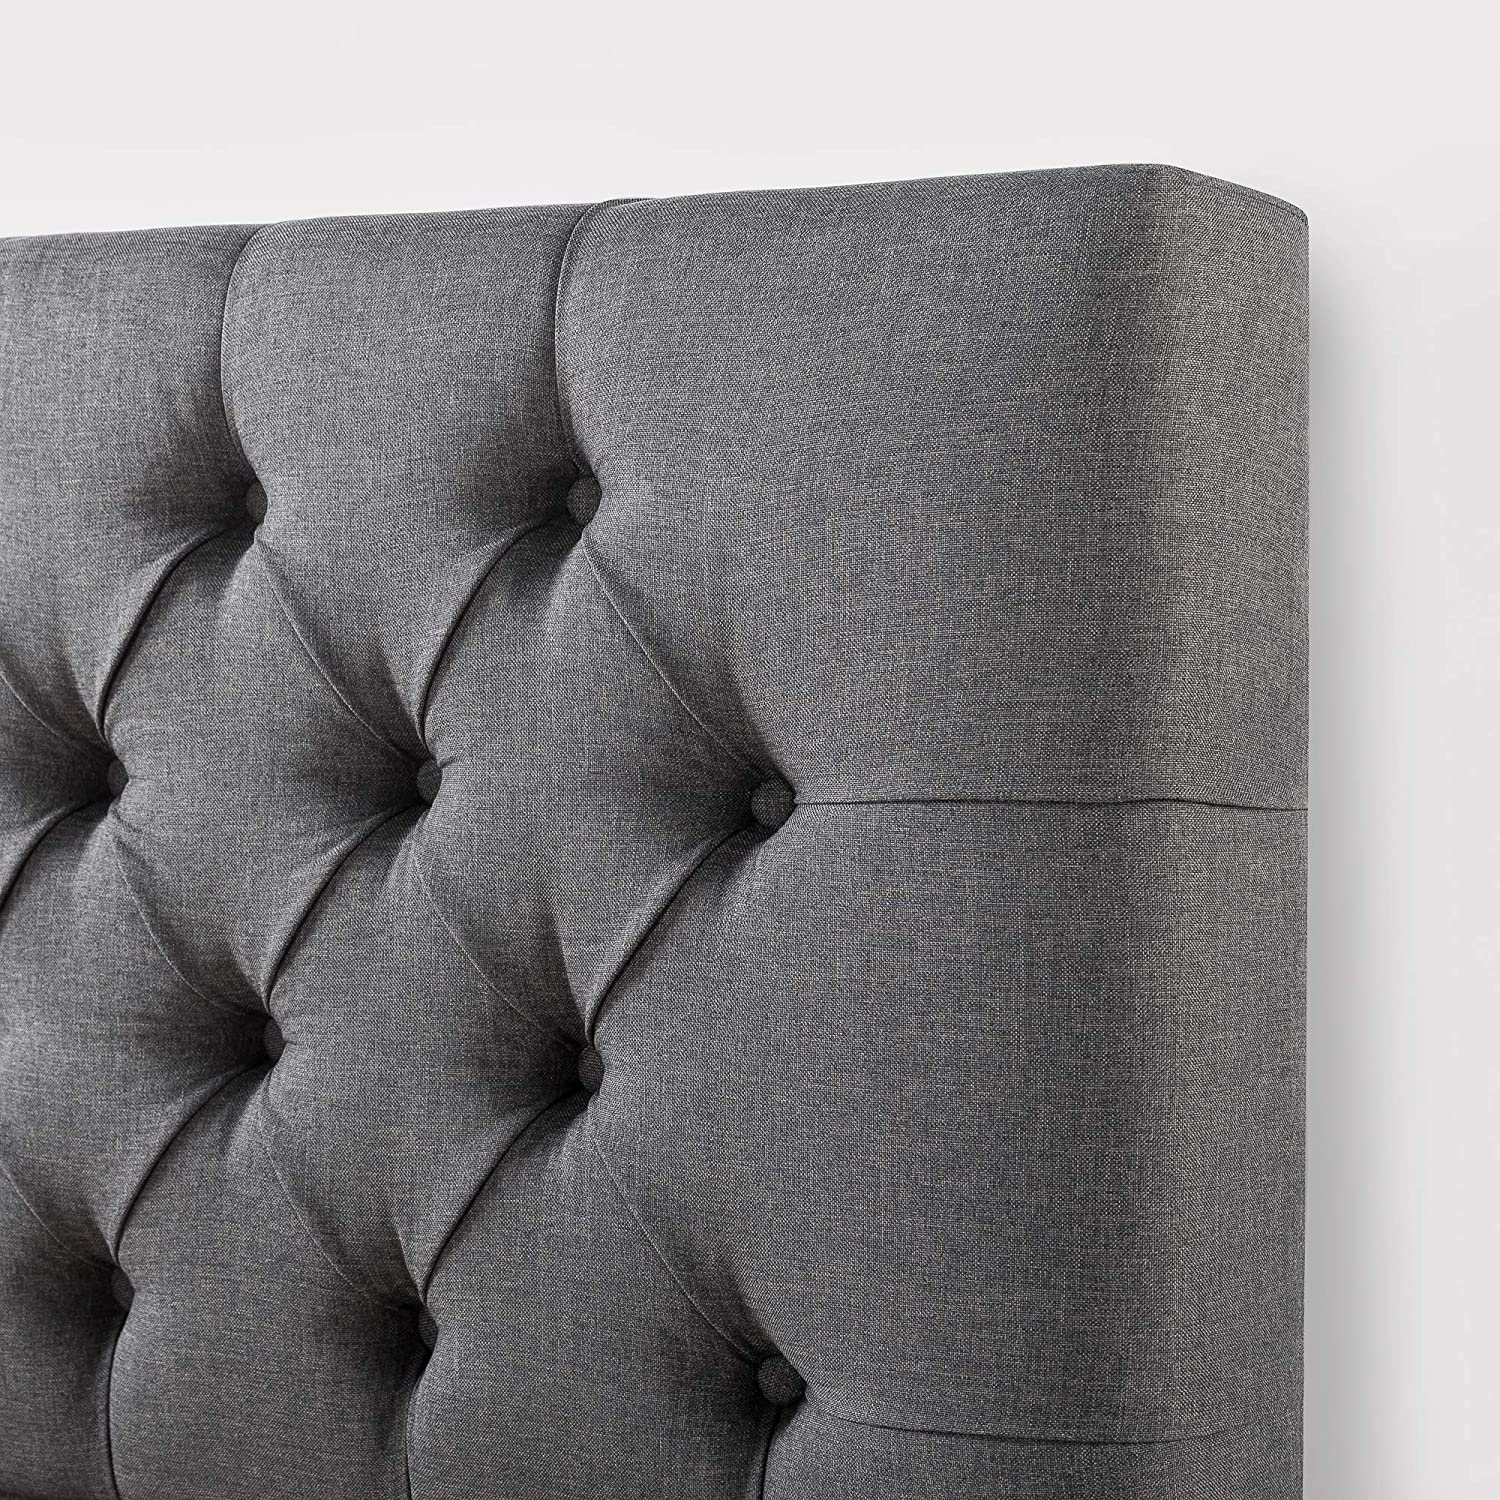 ZINUS Misty Upholstered Platform Bed Frame, Charcoal Gray